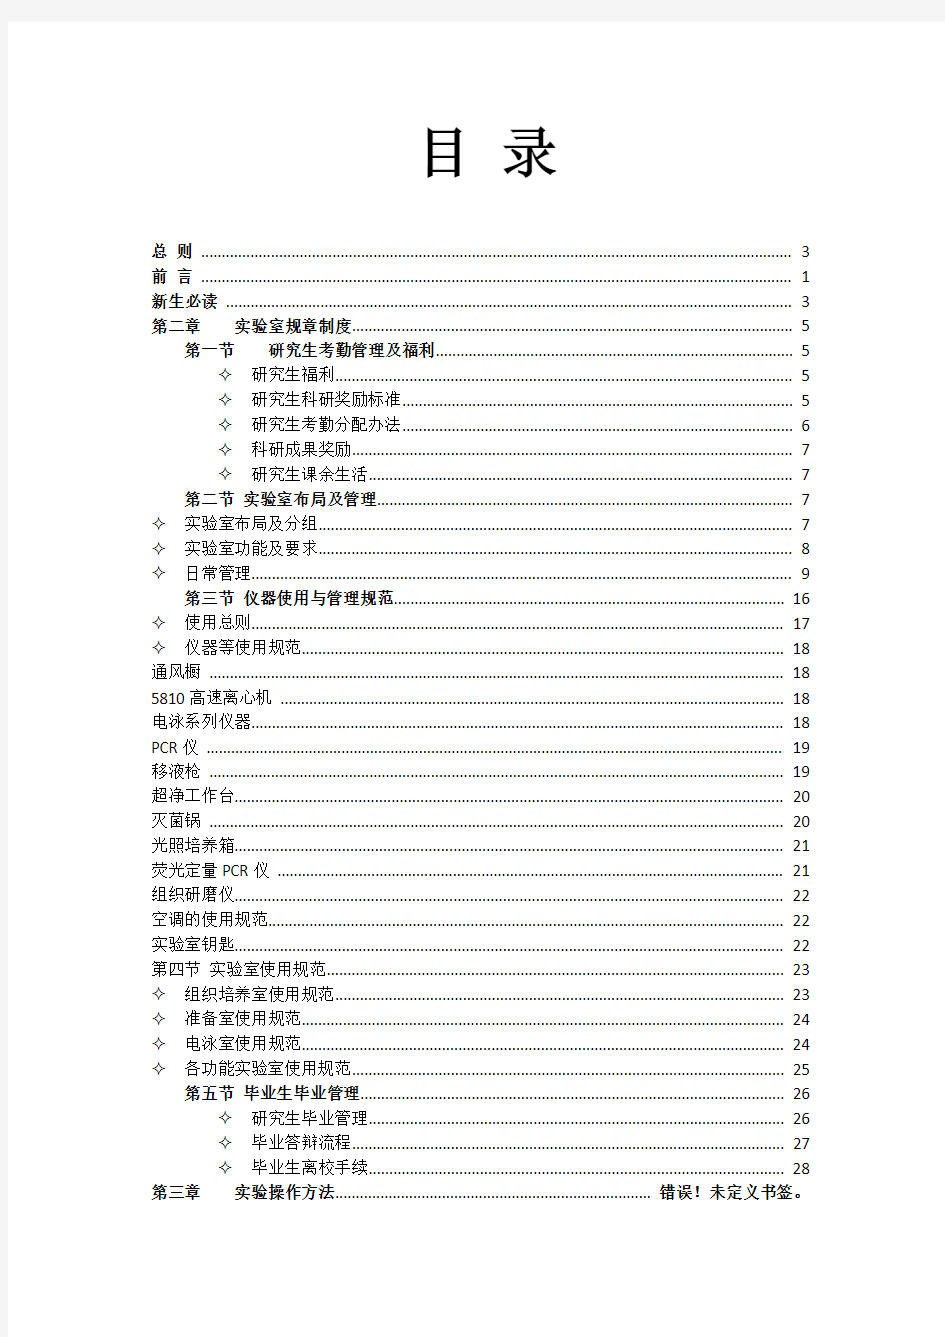 棉花组研究生手册-2011-12-1